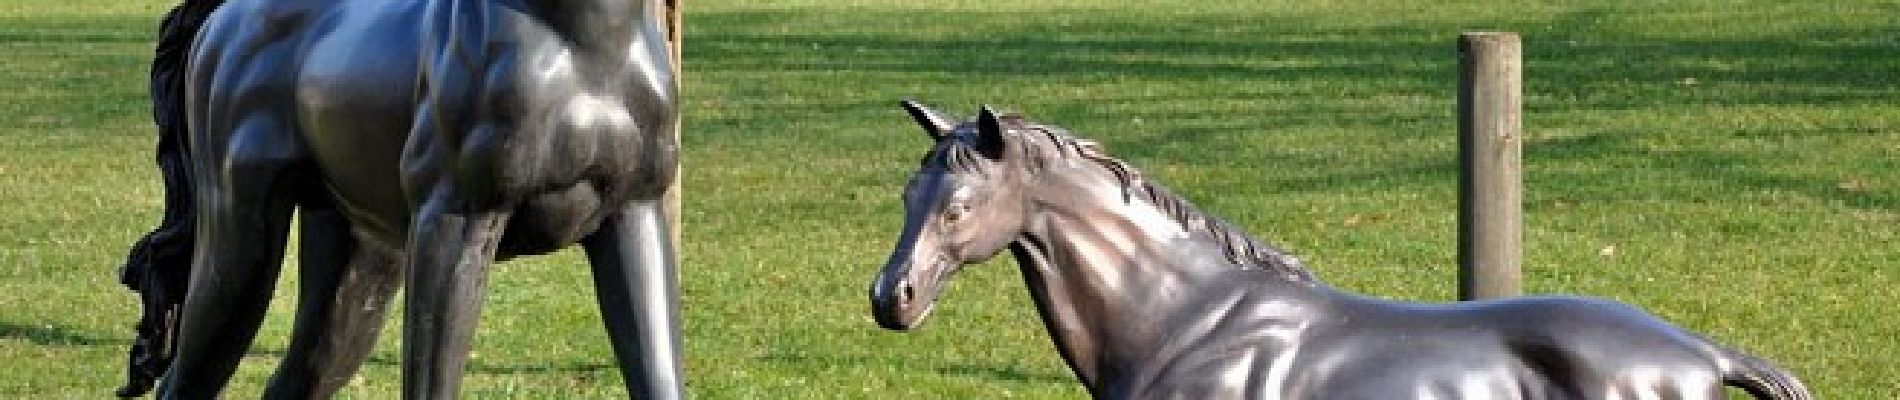 POI Marche-en-Famenne - Les chevaux en bronze - Photo